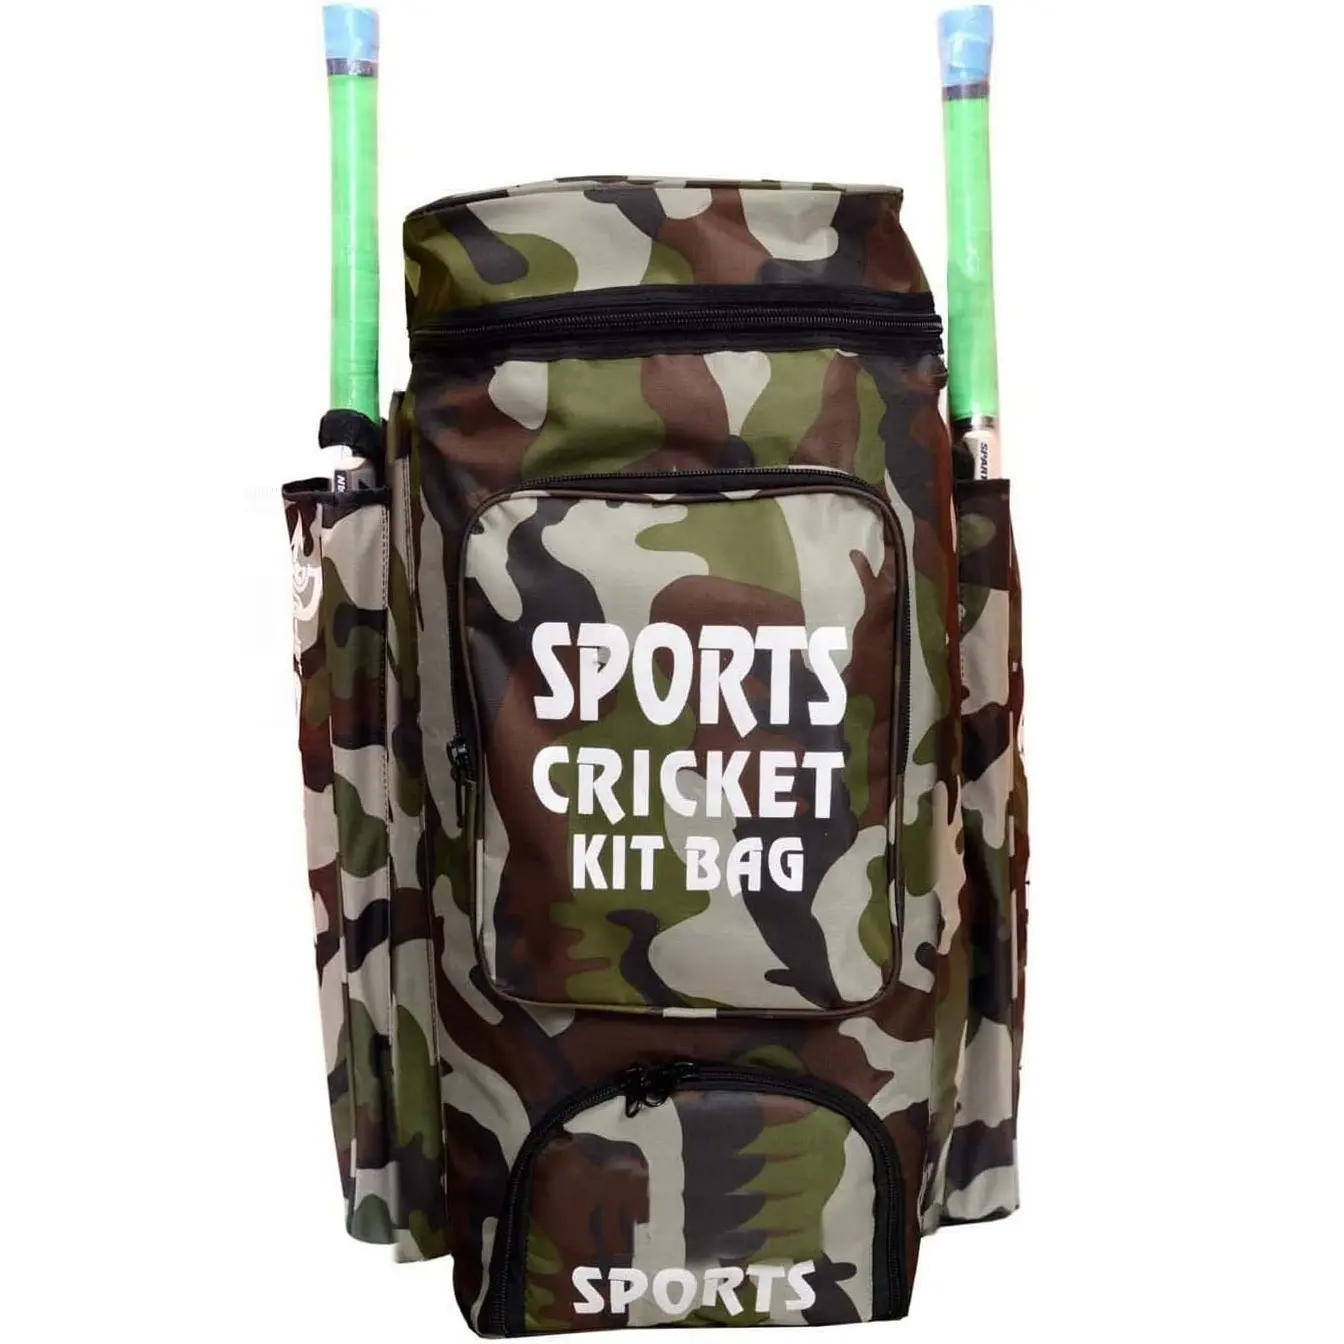 Personalizado durável grande esportes kit cricket kits equipamento bolsa para homens